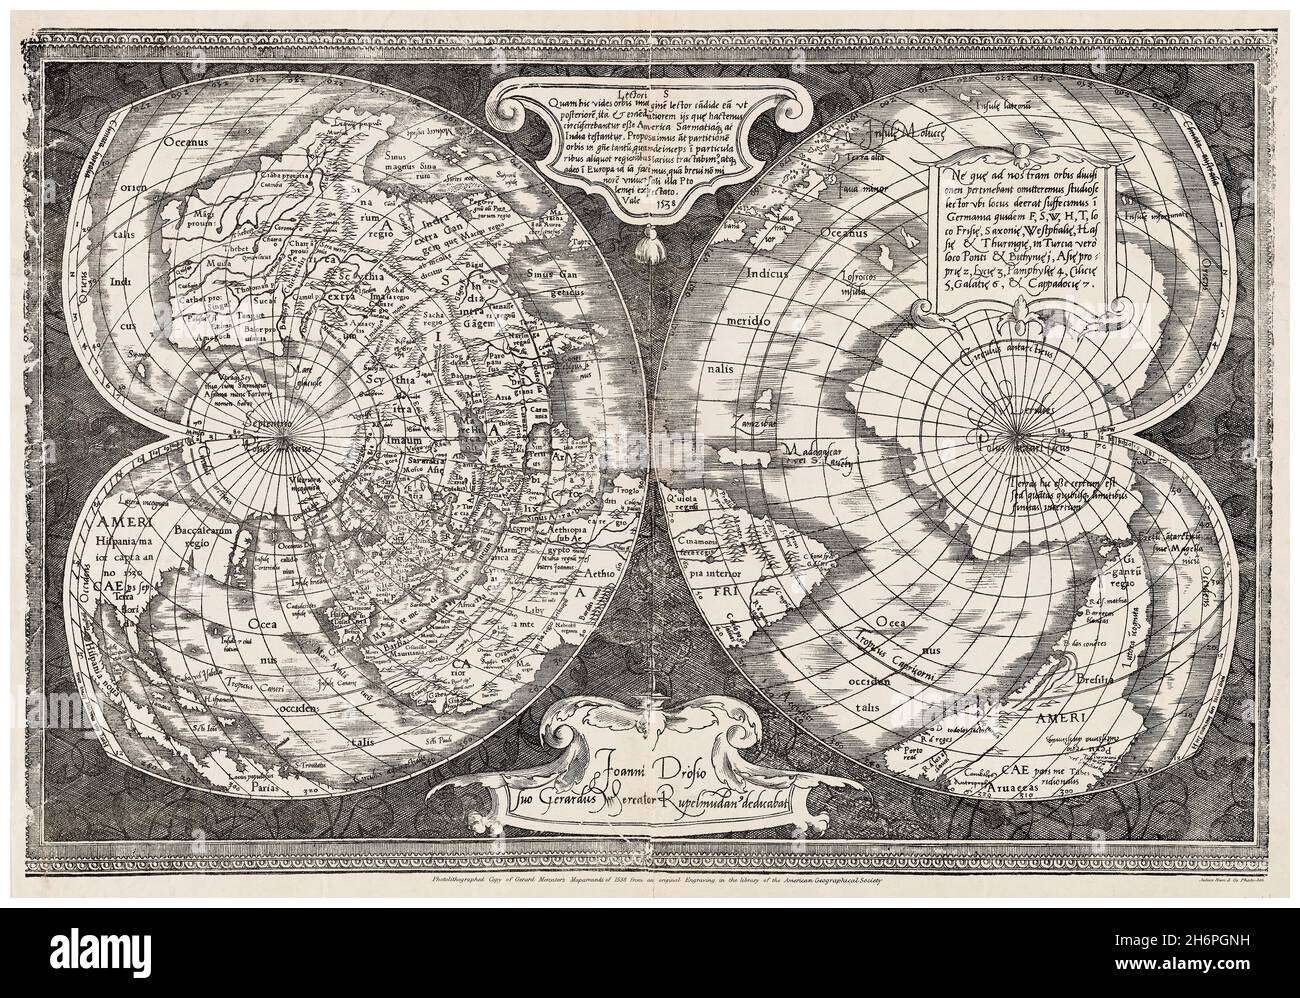 Mapamaldi: Carte du monde du XVIe siècle, cartographie de Gerard Mercator, 1538 Banque D'Images